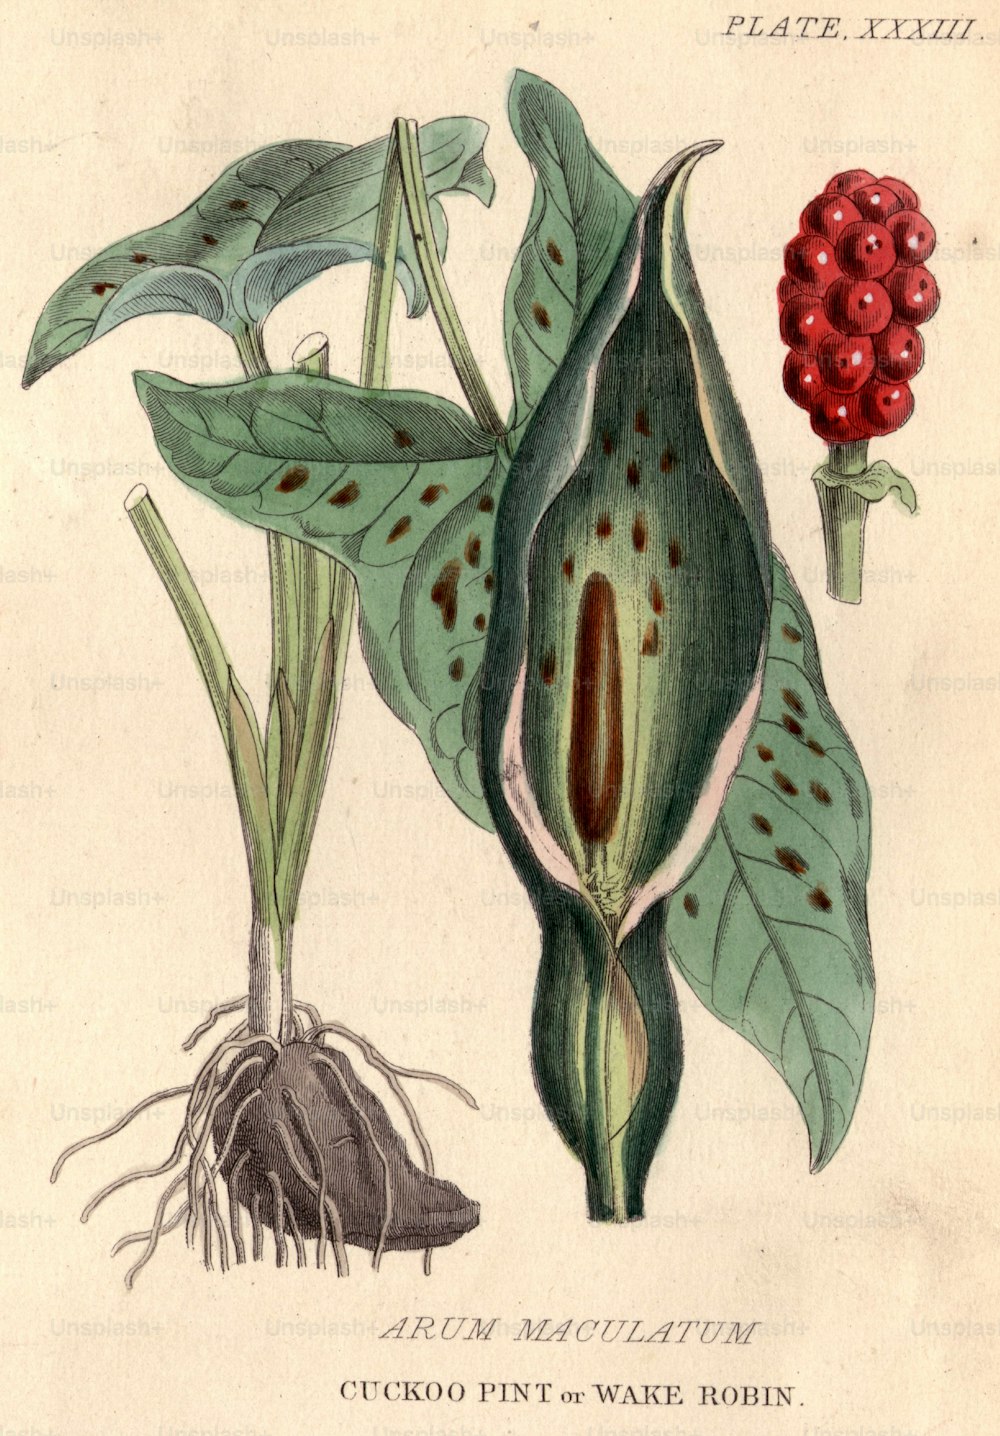 um 1800: Arum maculatum, Kuckuckspint oder Wake Robin mit seinen markanten und hochgiftigen roten Beeren.  (Foto von Hulton Archive / Getty Images)